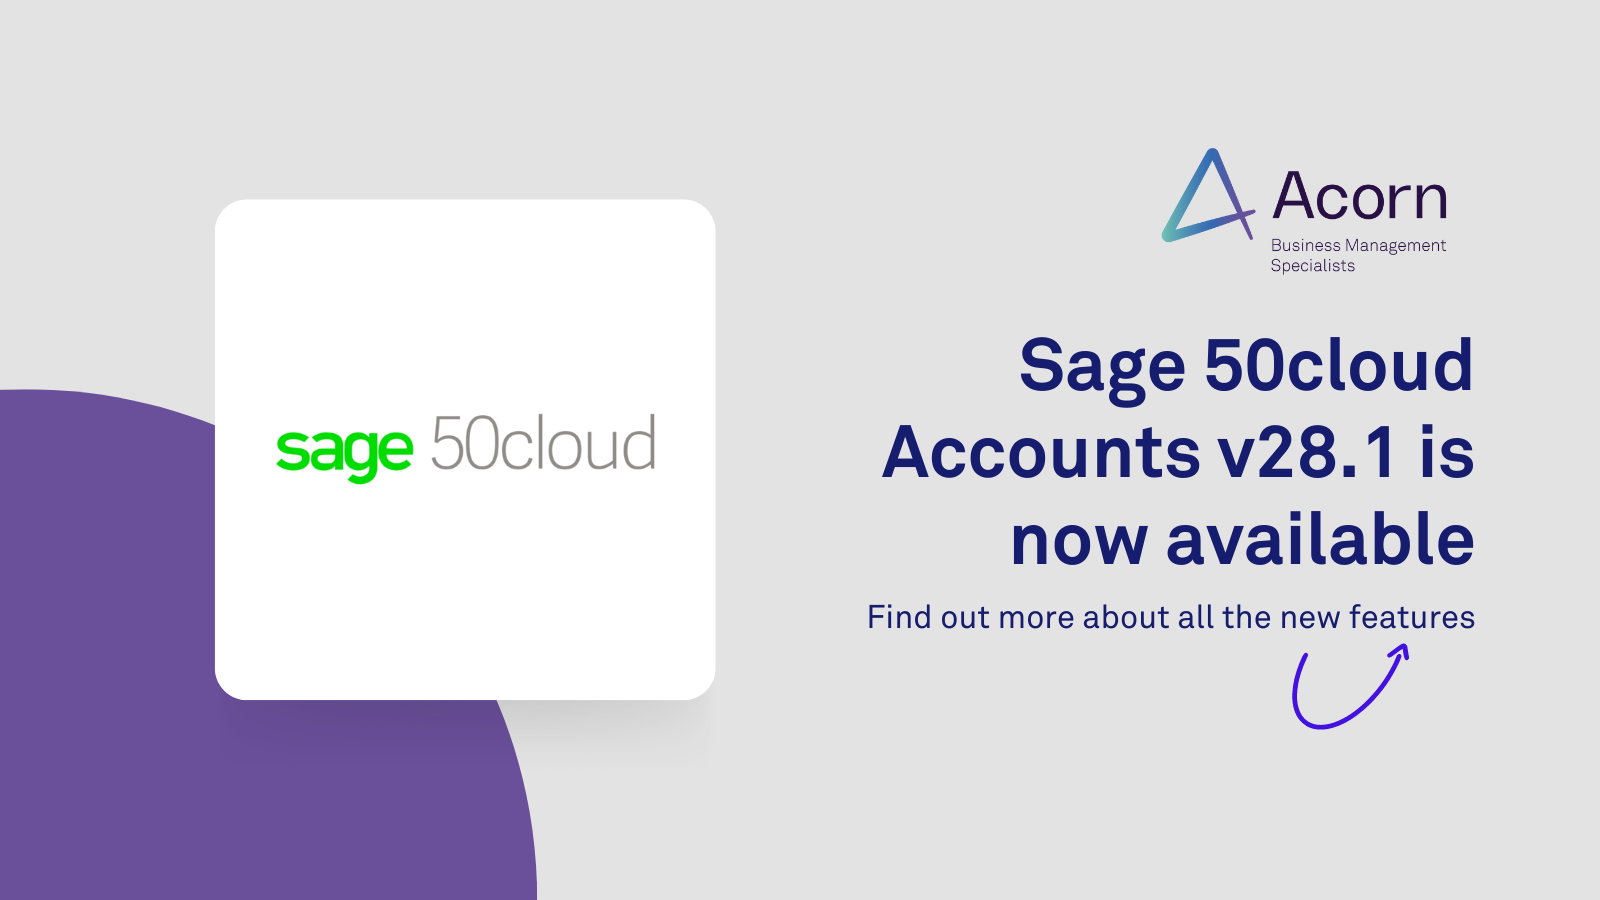 Sage 50cloud Accounts v28.1